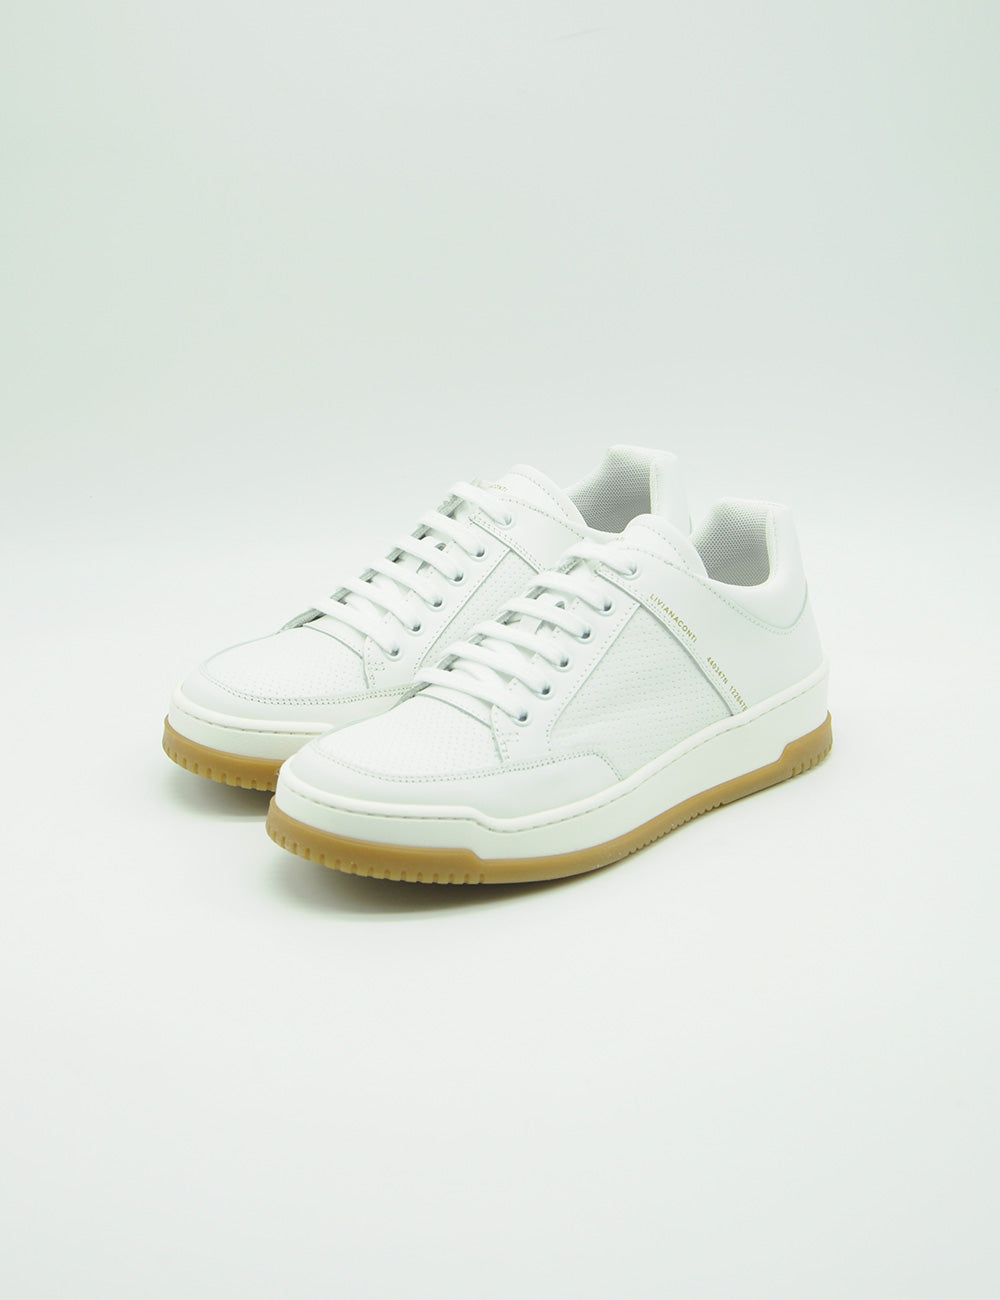 Liviana Conti Sneakers White